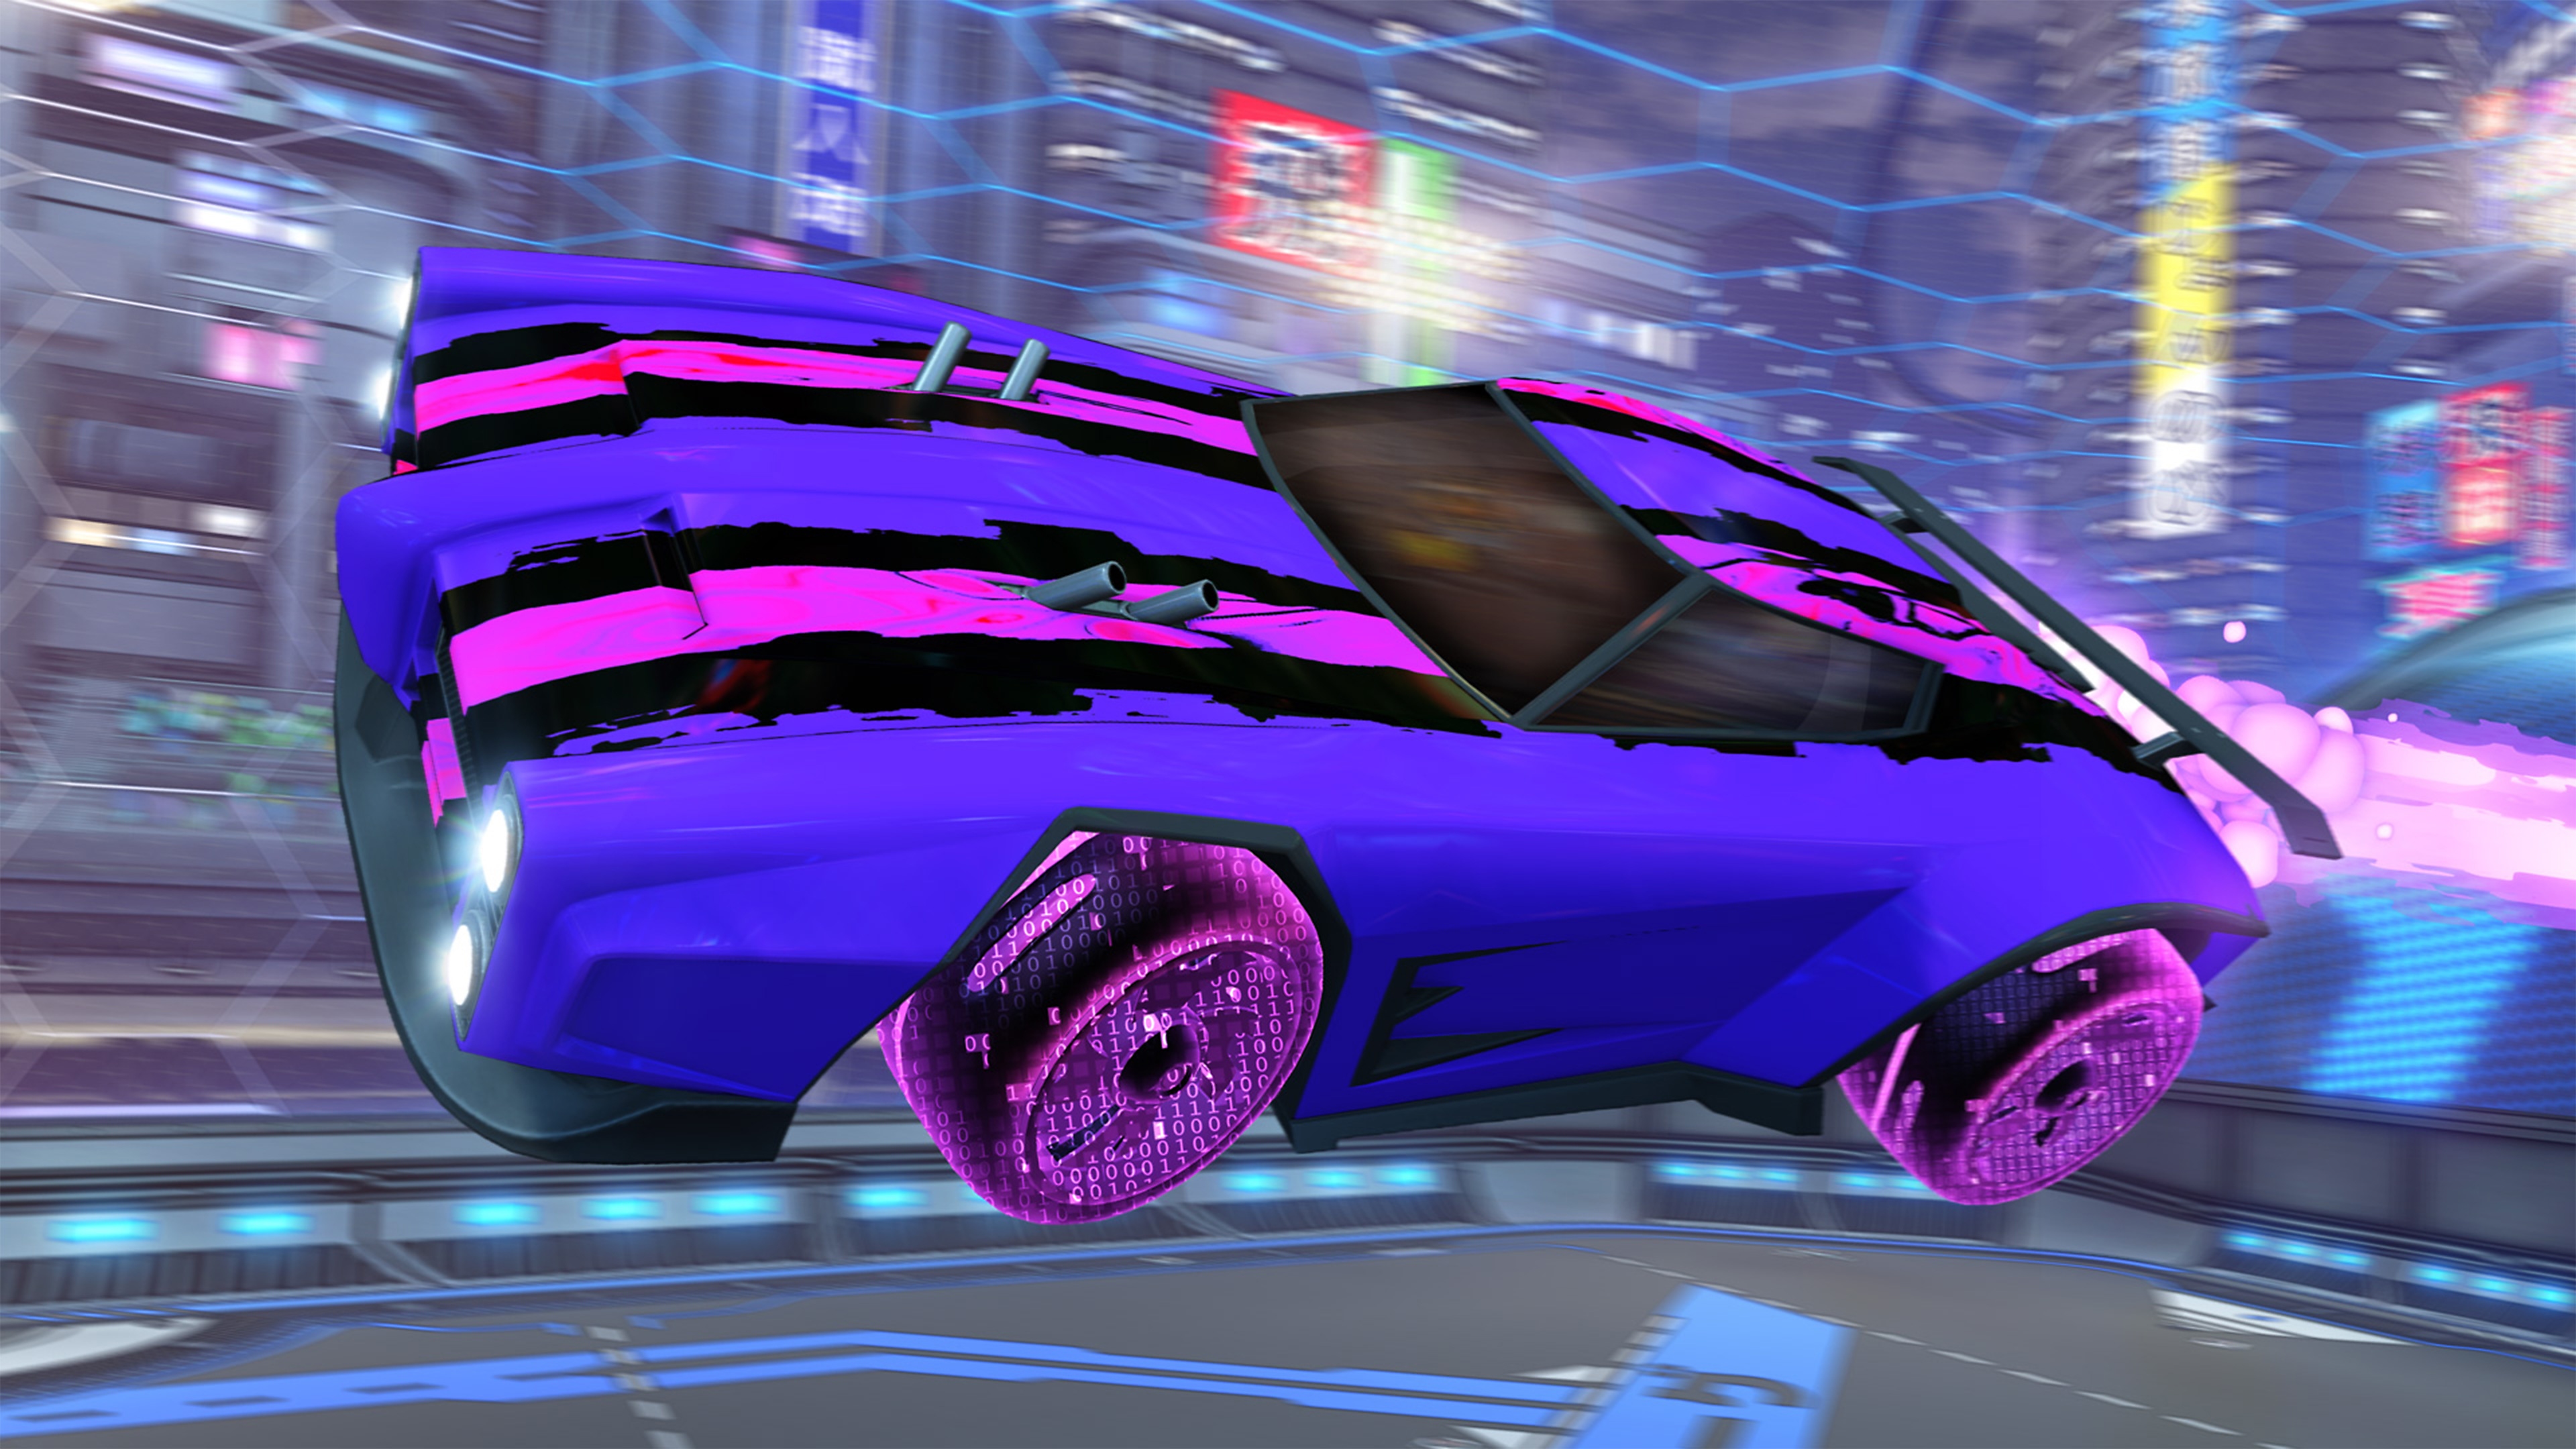 Screenshot von Rocket League, der ein lila Auto mit pinken und schwarzen Rennstreifen zeigt.